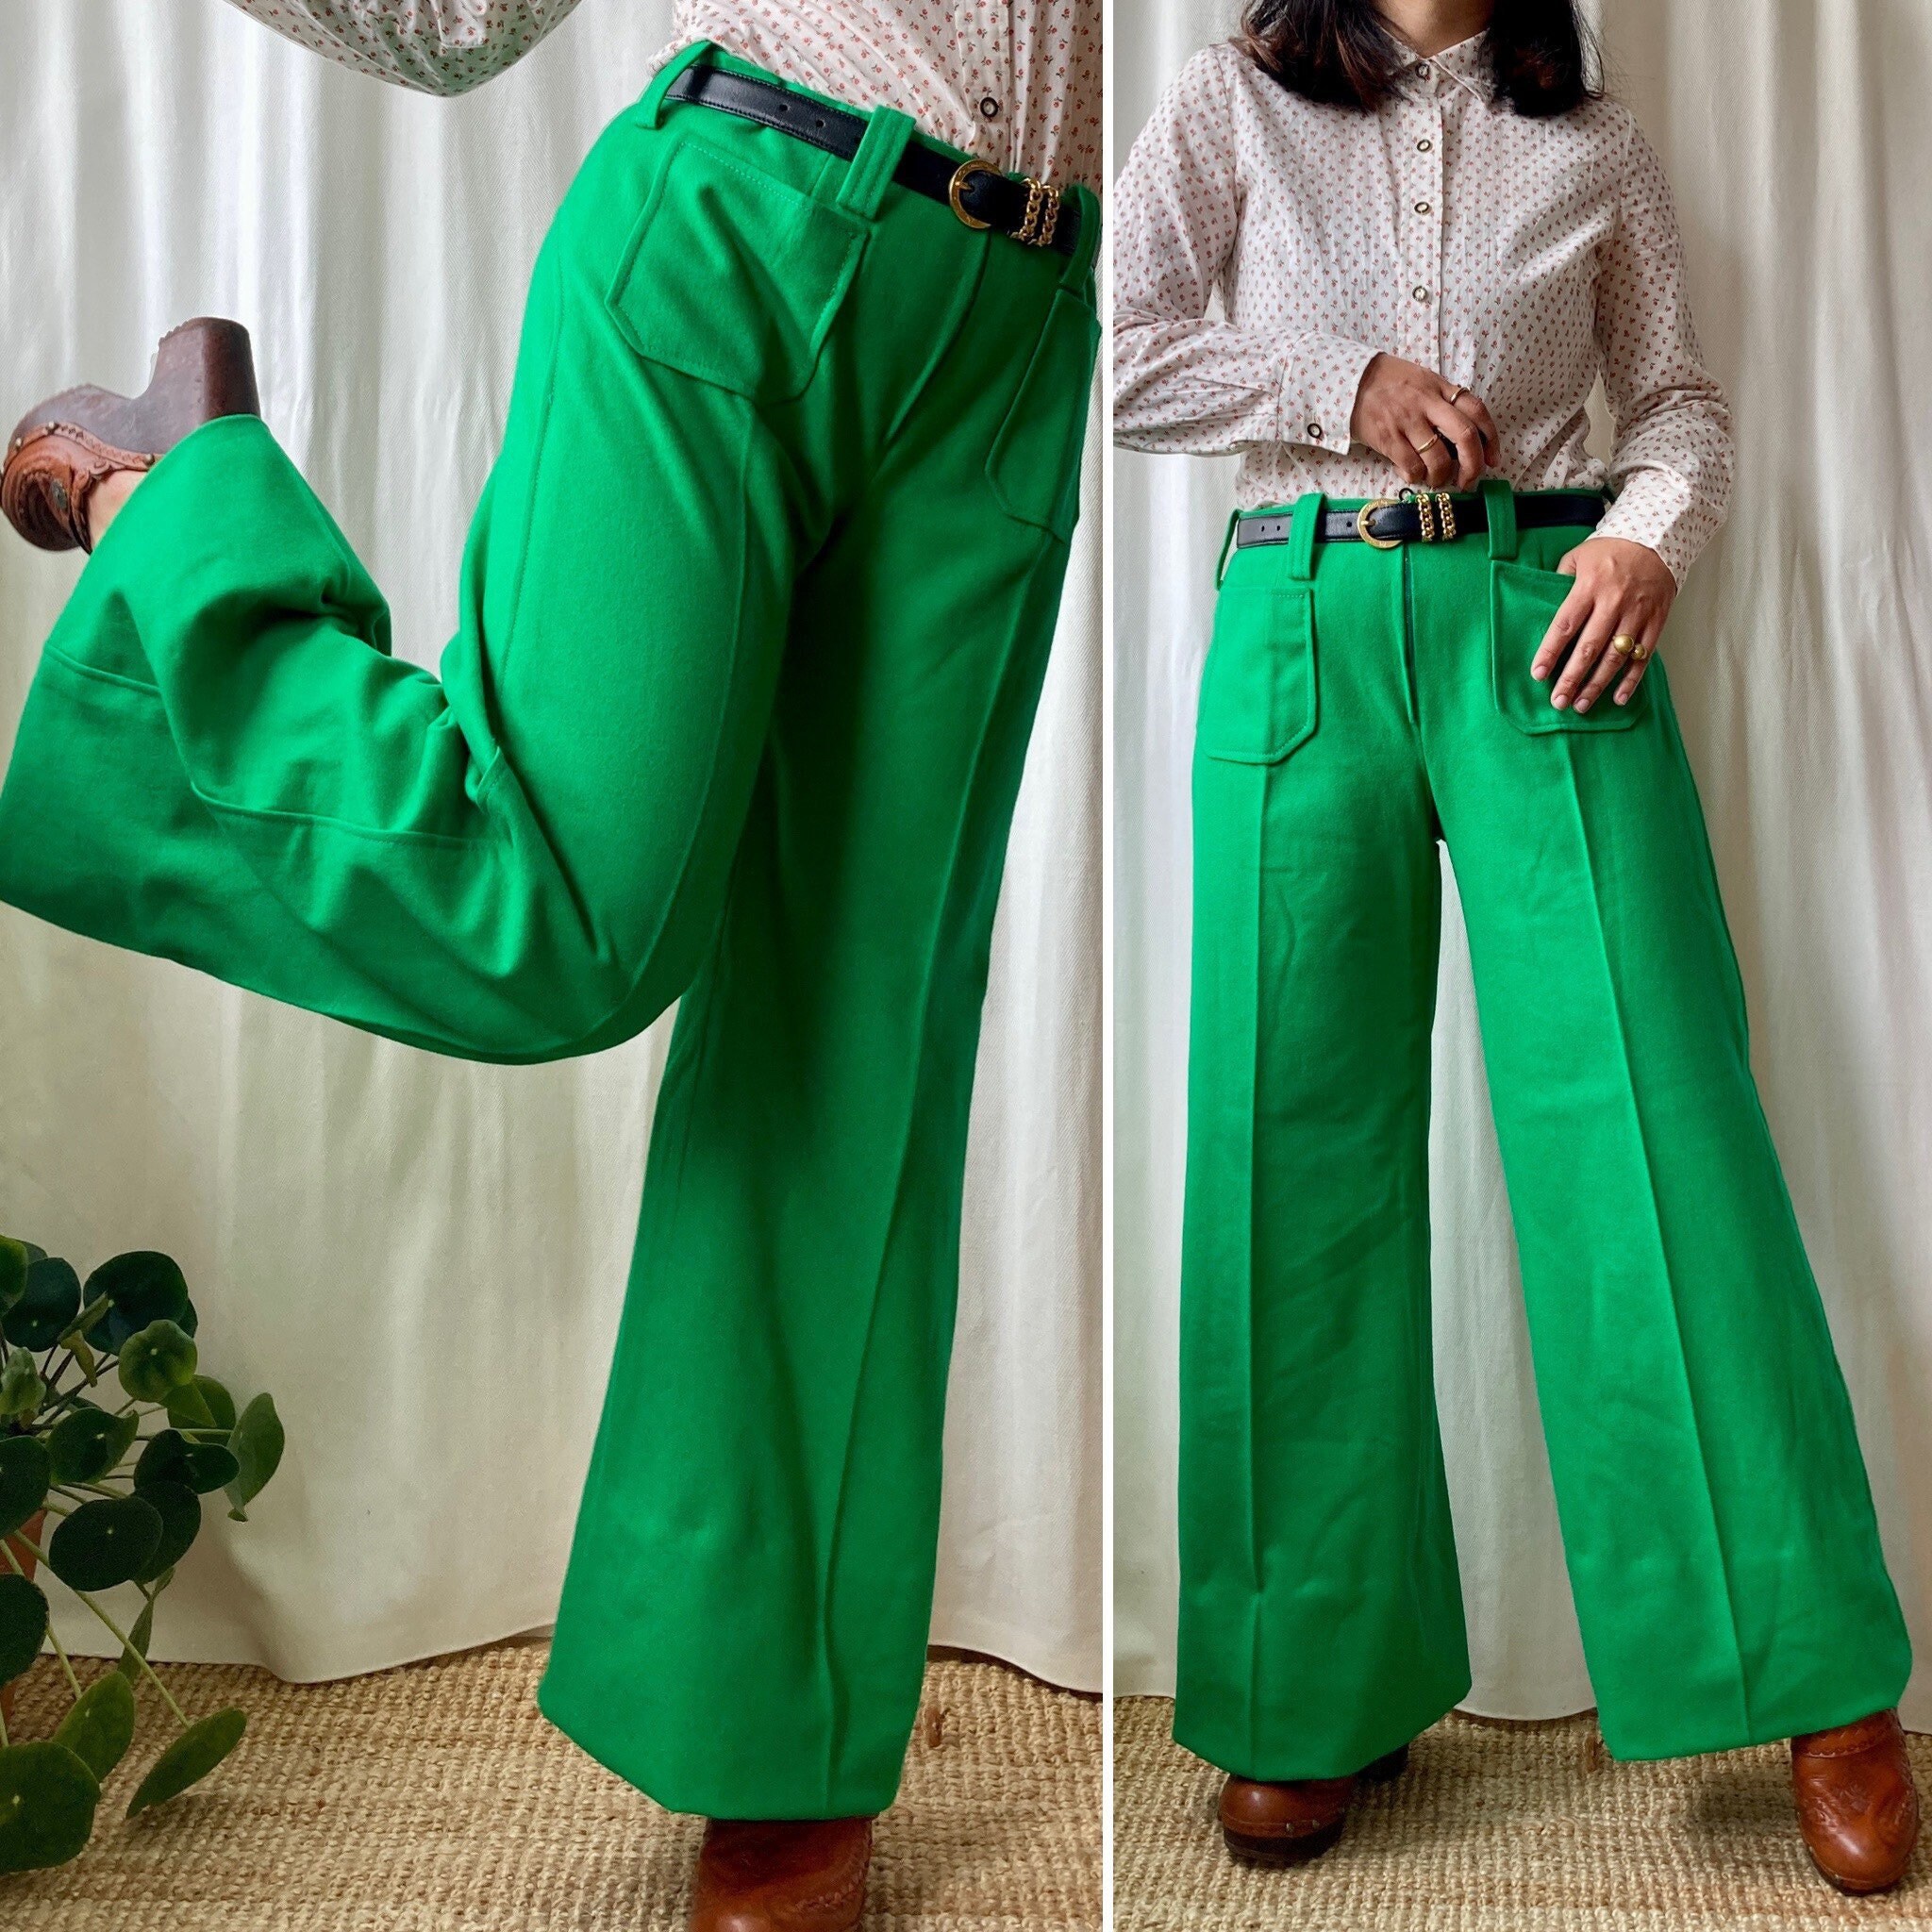 Kleding Dameskleding Broeken & Capriboeken Broeken Jaren '70 Handgemaakte S Green Flare Polyester Broek 